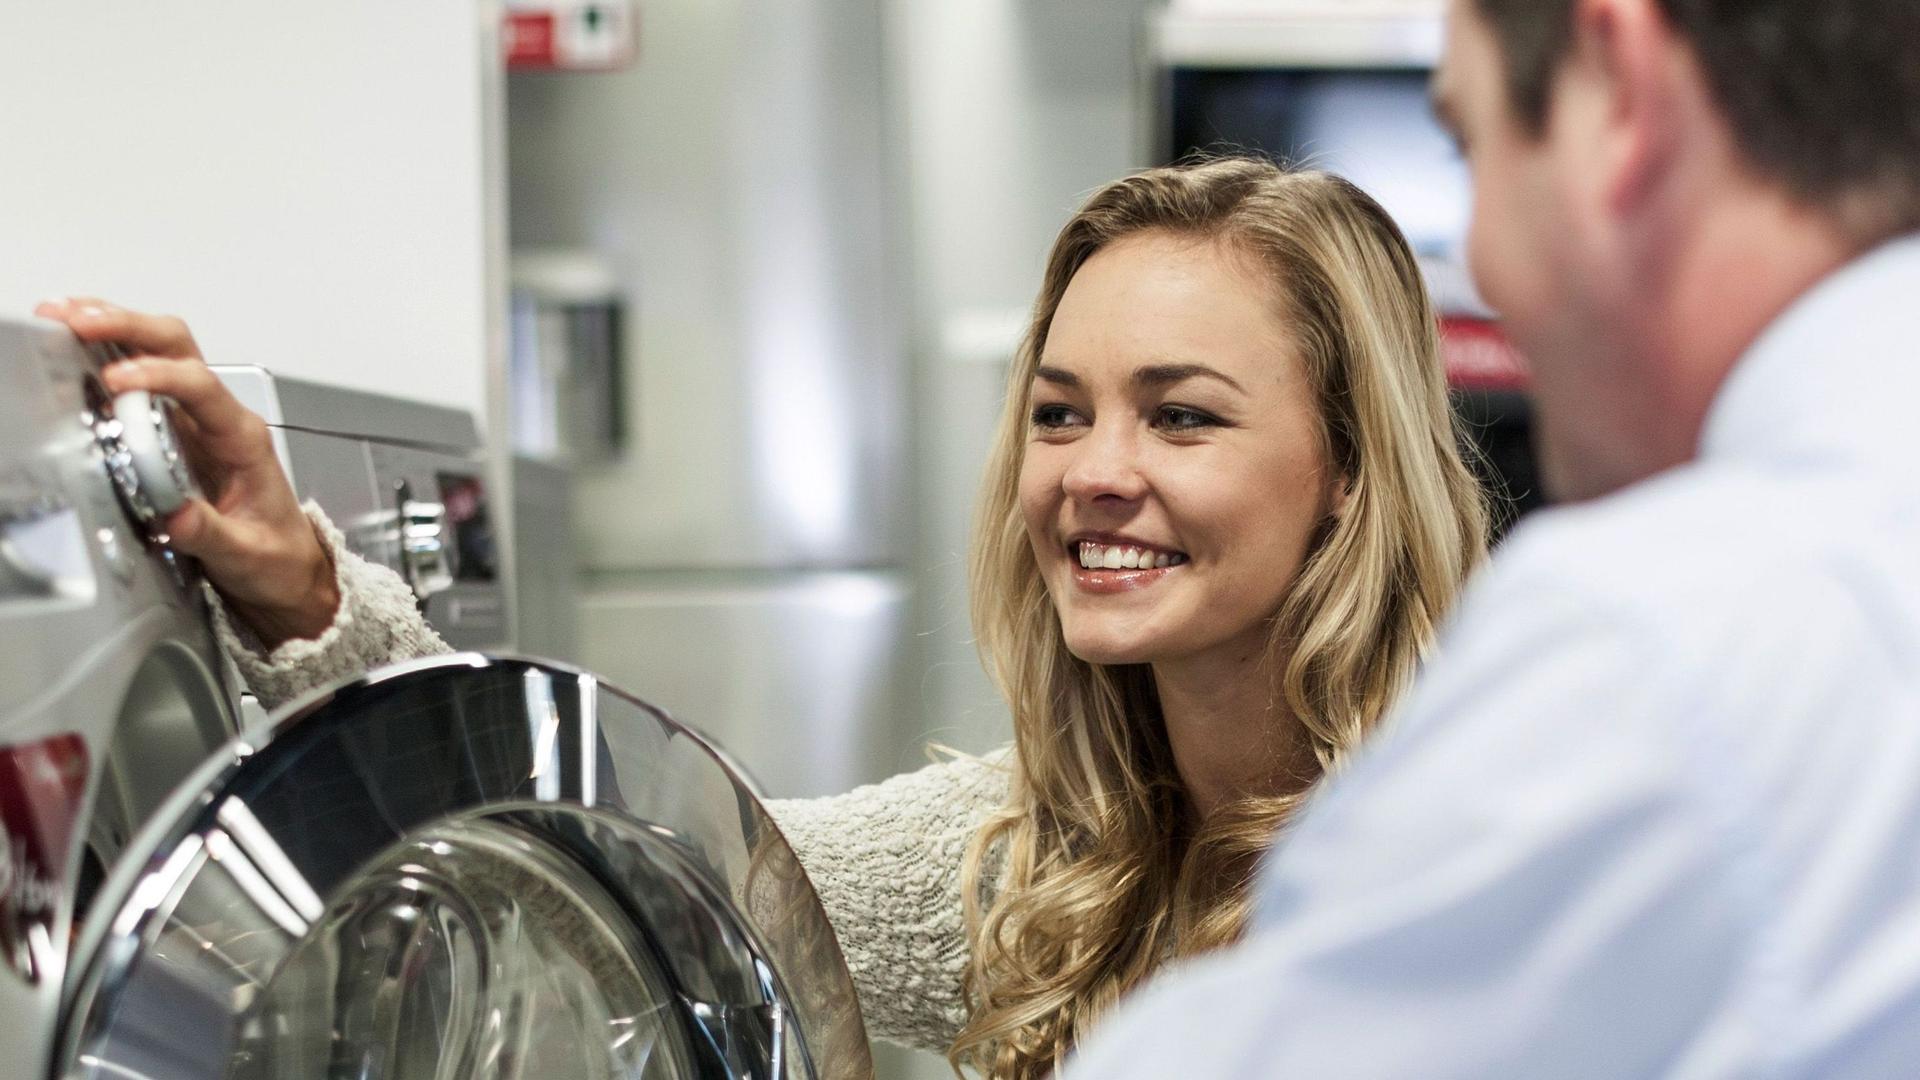 Eine junge blonde Frau ist in einem Beratungsgespräch mit einem Verkäufer. Sie hocken vor einer Waschmaschine.